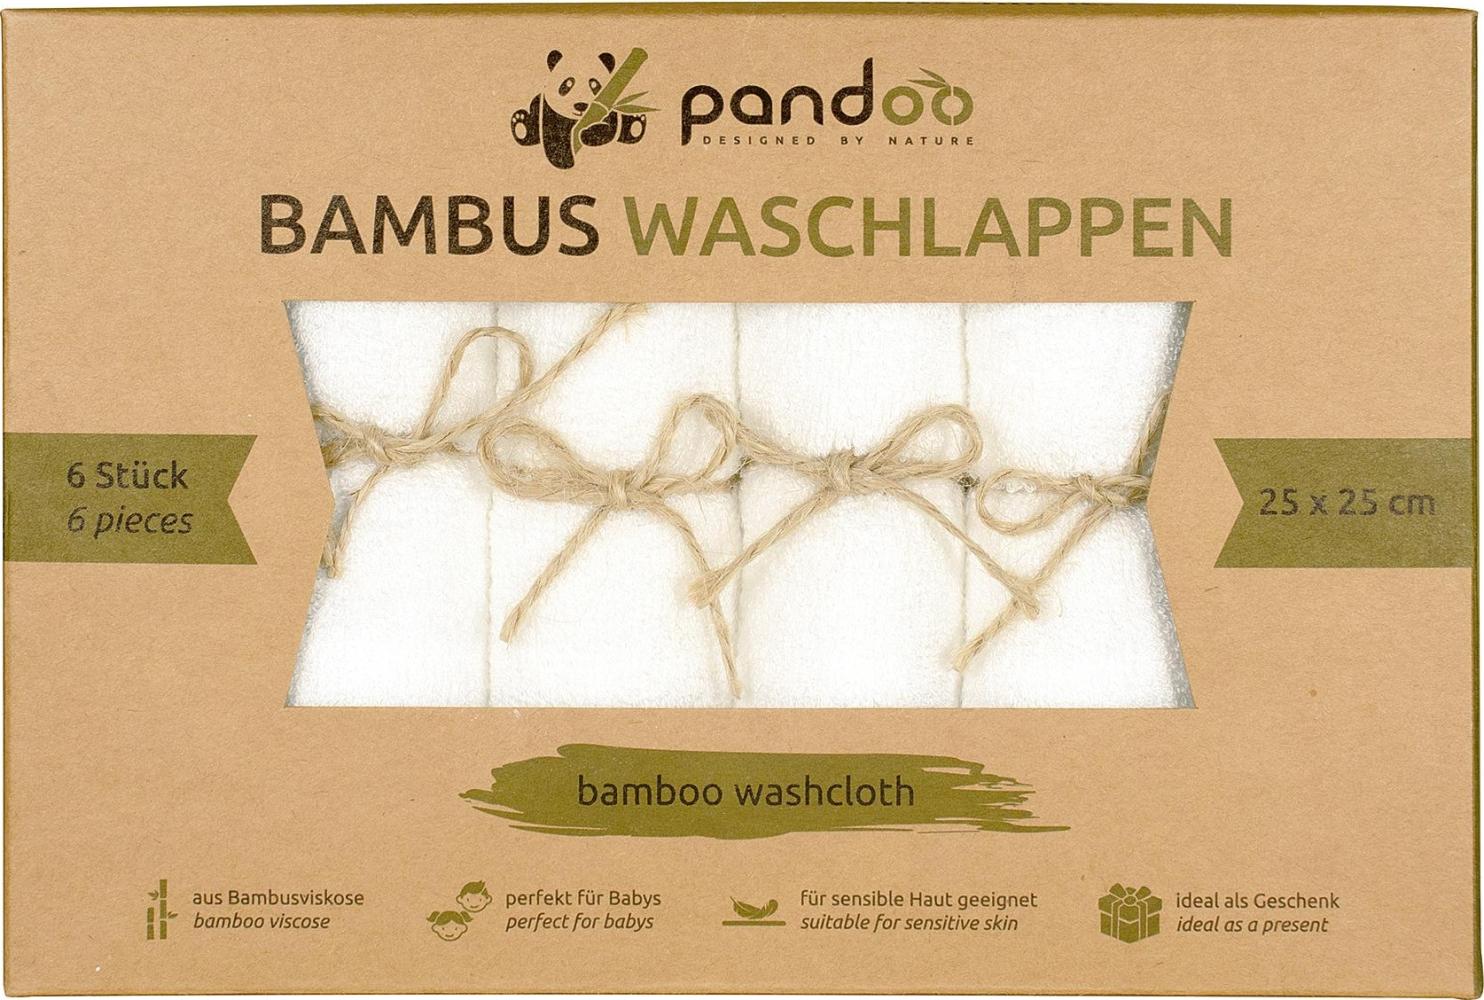 pandoo 100% Bambus Baby Waschlappen - kuschelweich, farbstofffrei, hypoallergen, anti-mikrobiell & antibakteriell für empfindliche Baby Haut - 25x25cm weiß - 6 Stück Bild 1